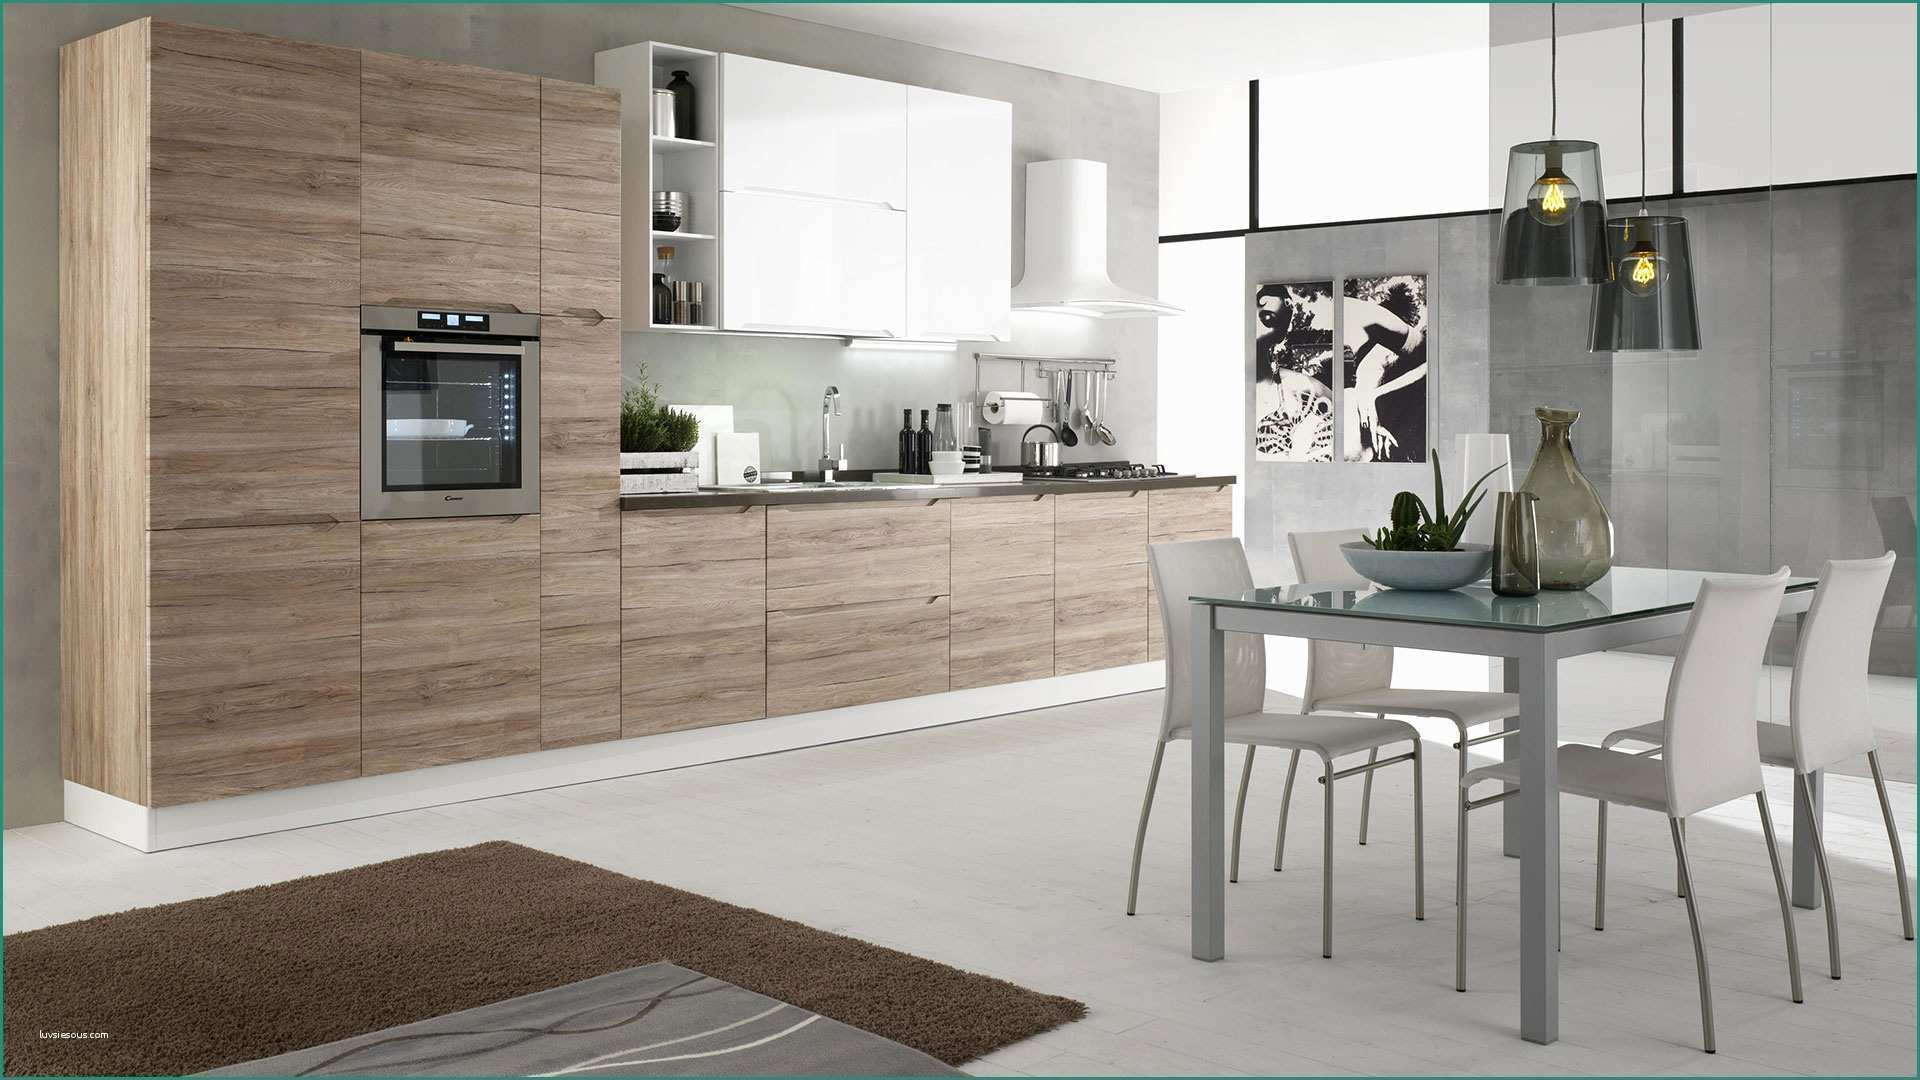 Colori Cucina Moderna E Immagini Di Cucine Moderne Excellent soggiorno Open Space soggiorno